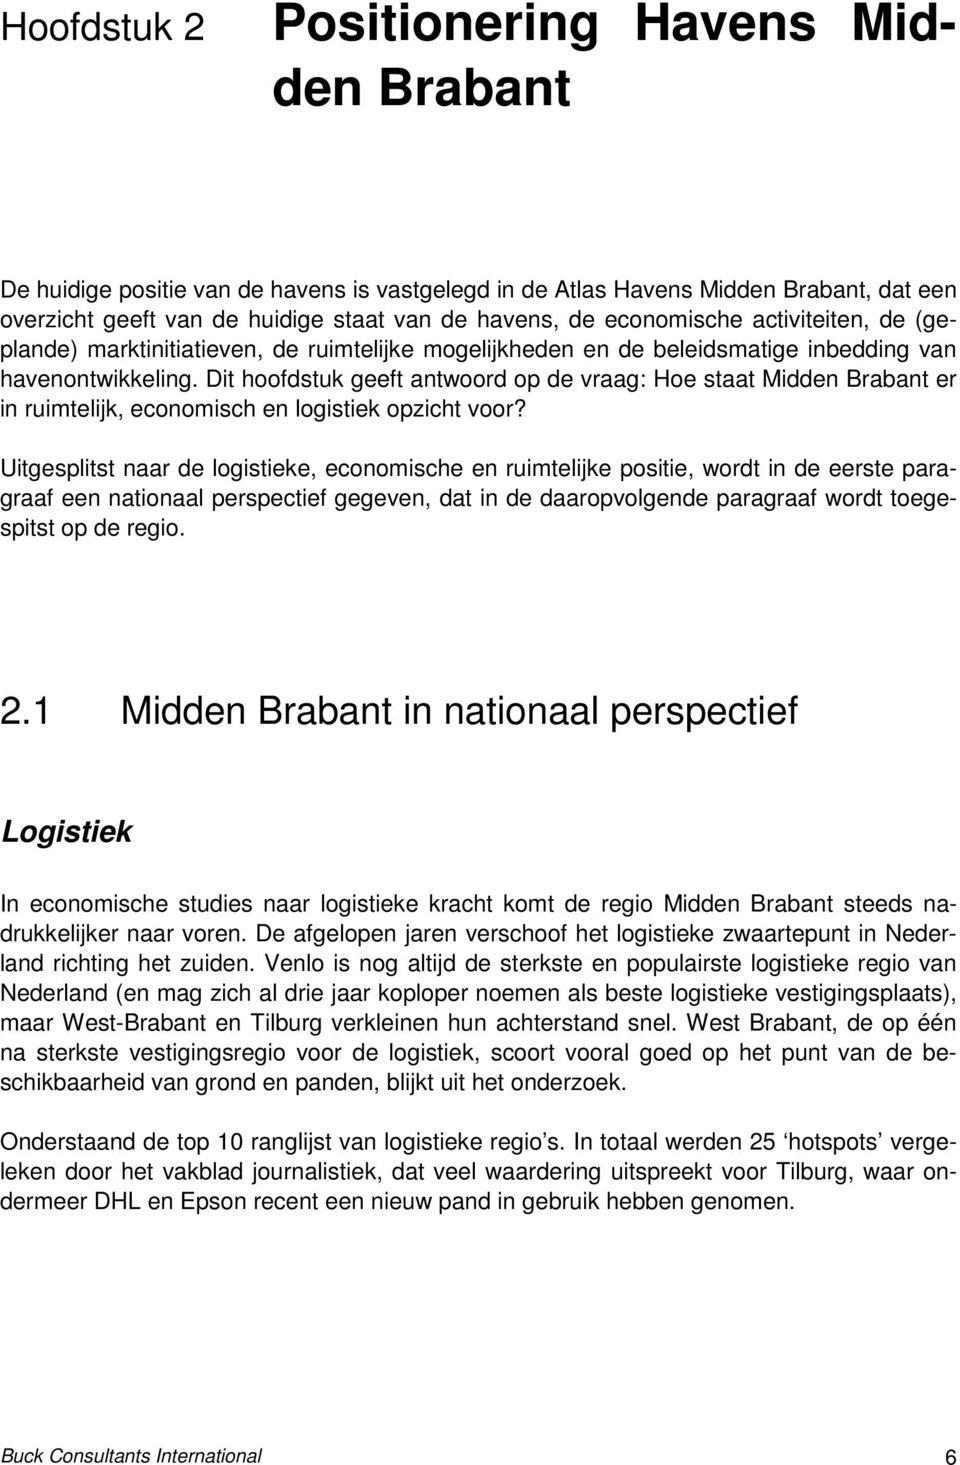 Dit hoofdstuk geeft antwoord op de vraag: Hoe staat Midden Brabant er in ruimtelijk, economisch en logistiek opzicht voor?